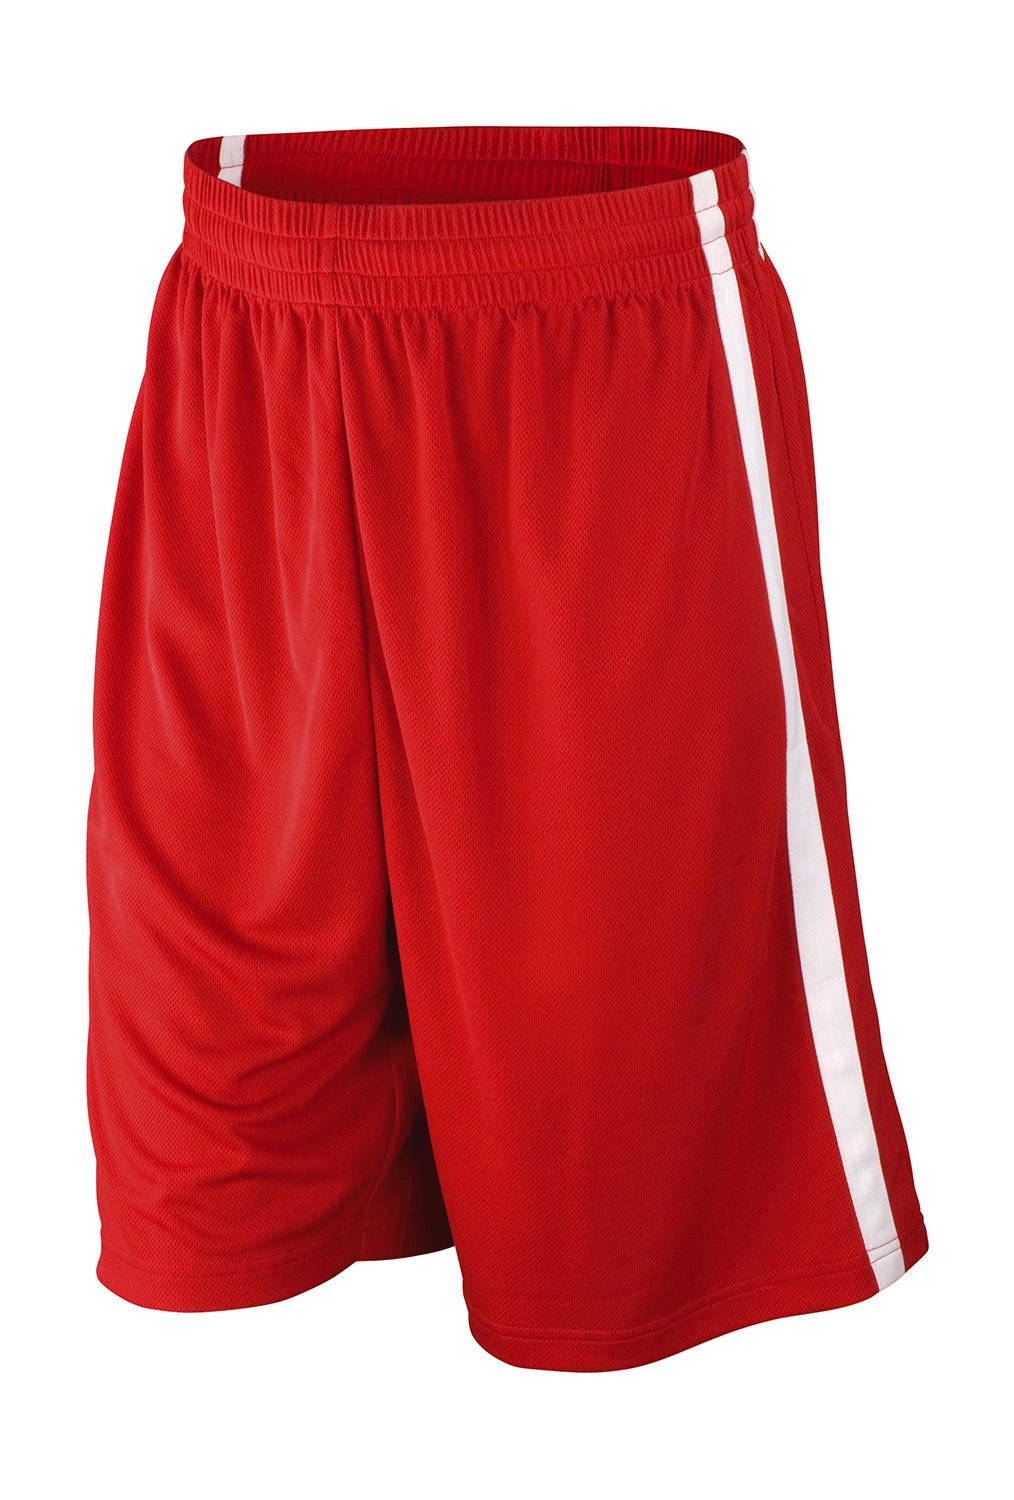 Men`s Quick Dry Basketball Shorts zum Besticken und Bedrucken in der Farbe Red/White mit Ihren Logo, Schriftzug oder Motiv.